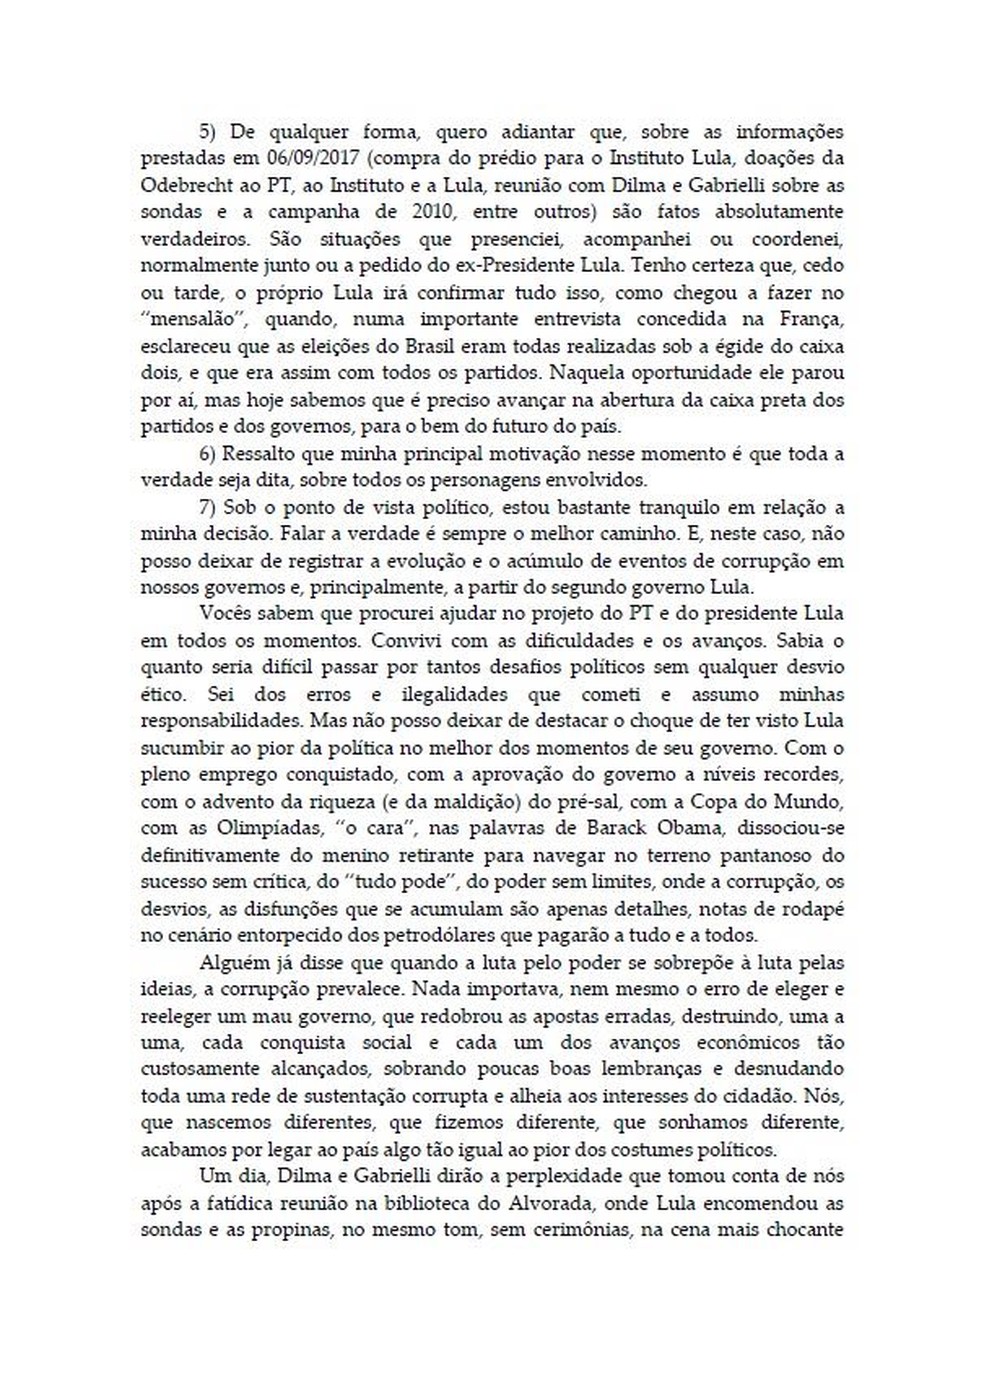 Carta Palocci 2 (Foto: Reprodução)